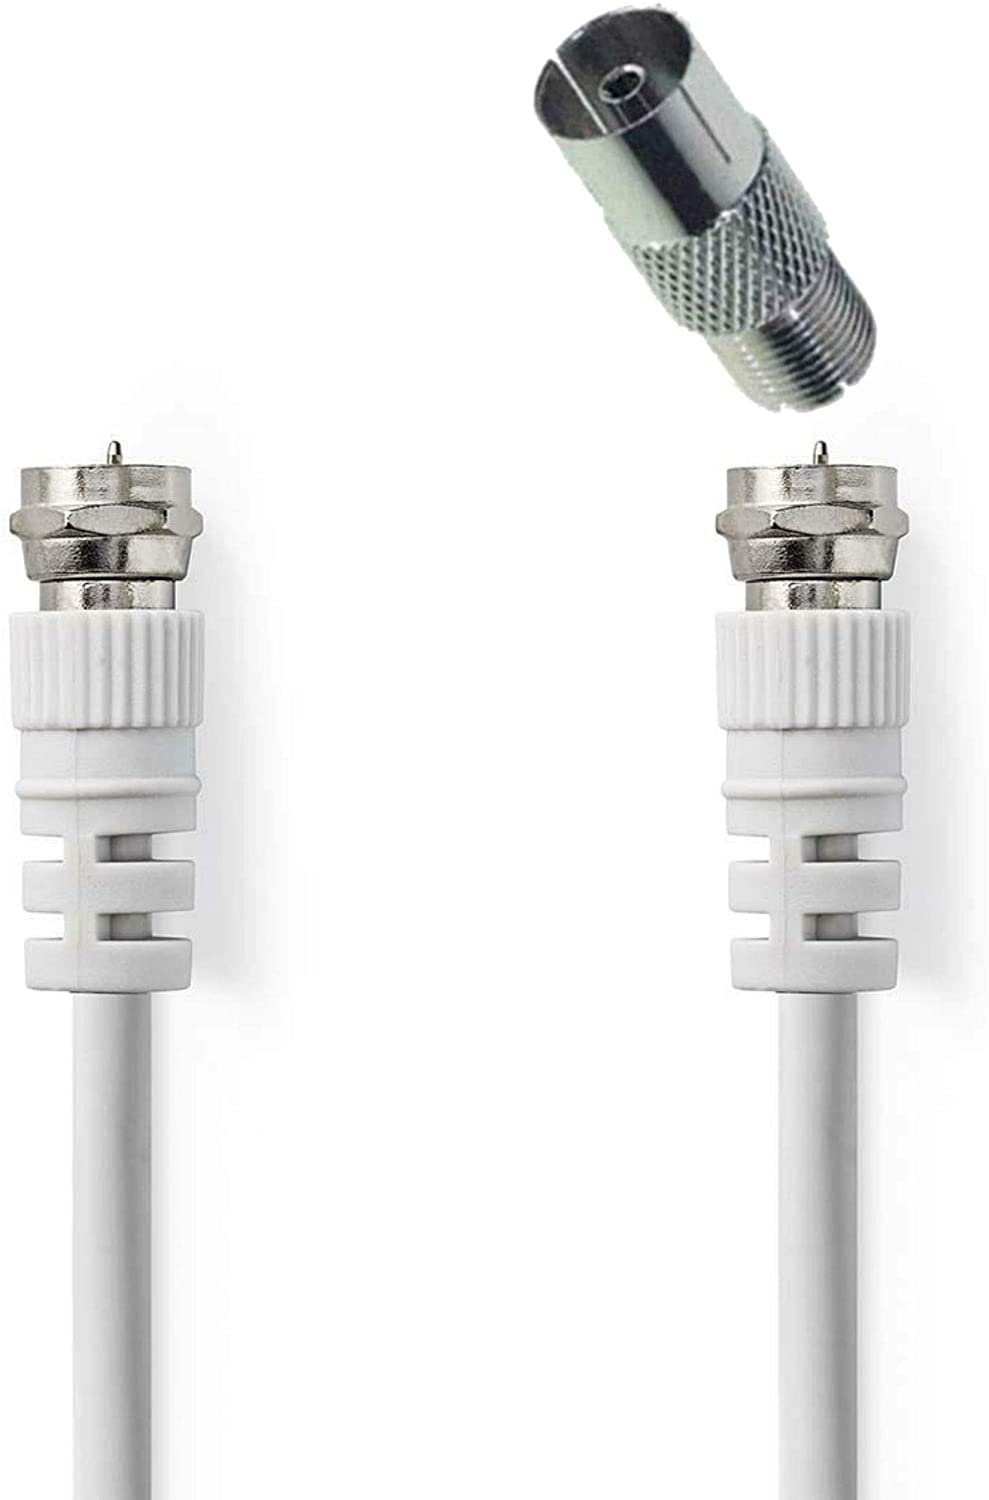 zu Adapter Kurzes 0,2m Antennenkabel SAT-Kabel Koaxial Koax Kabel TronicXL F-Stecker +